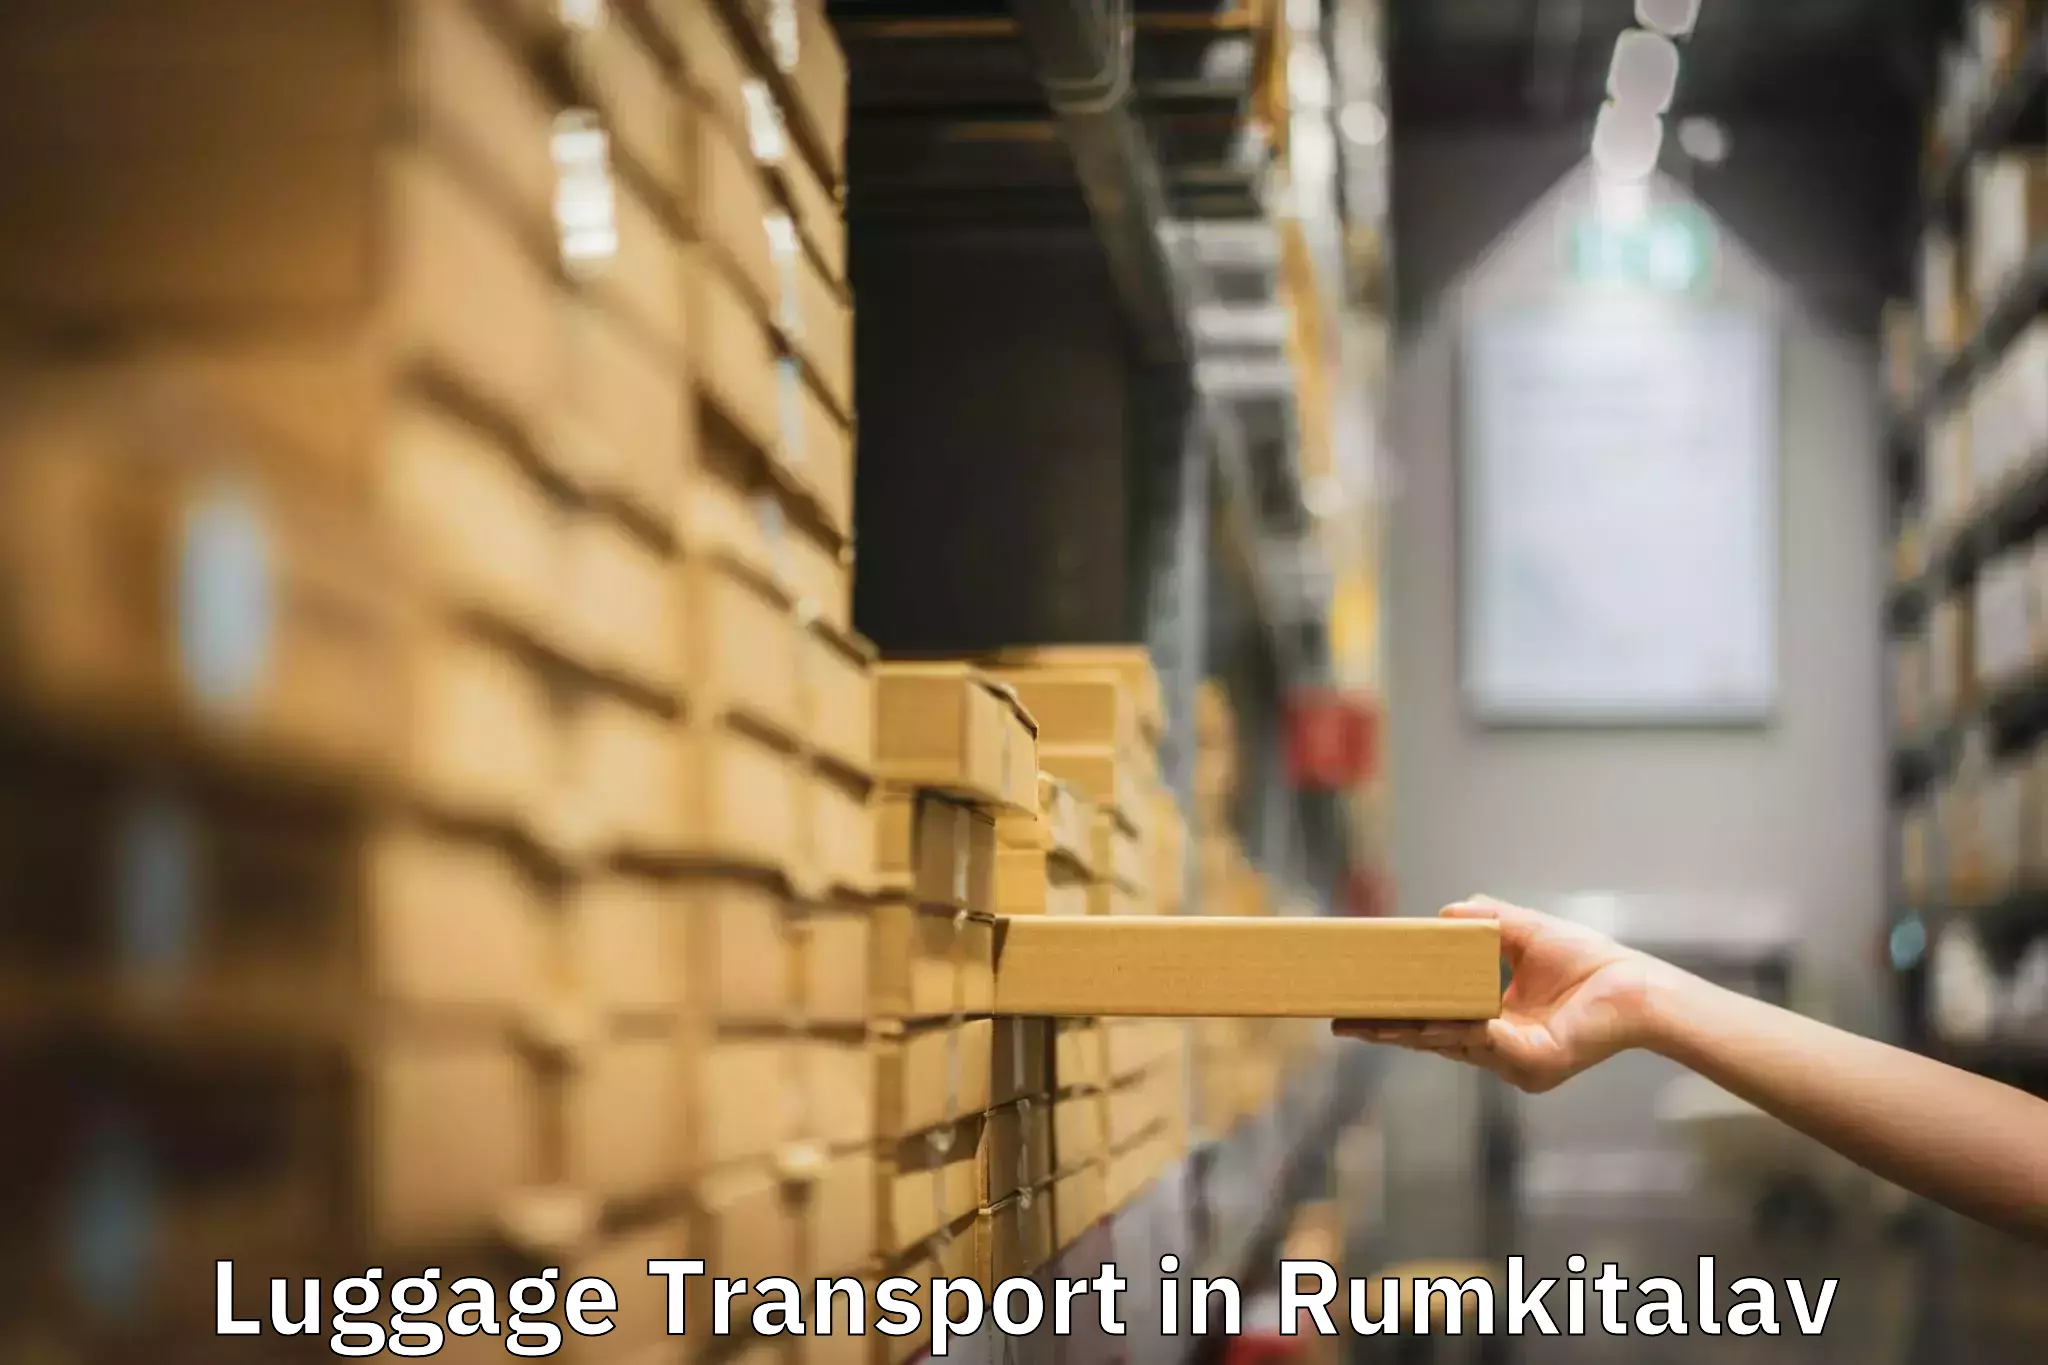 Luggage transit service in Rumkitalav